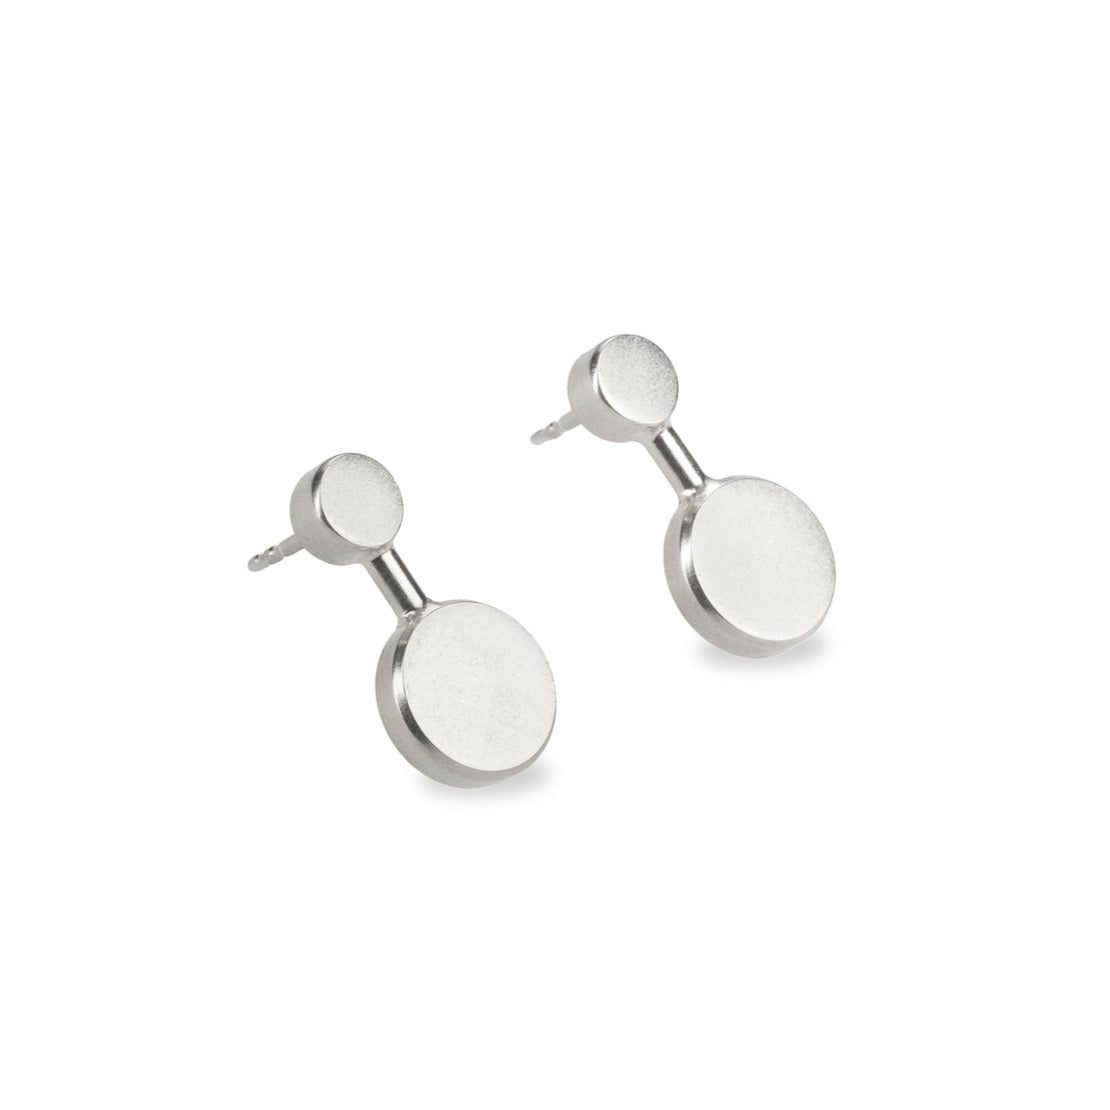 Kyō earrings small